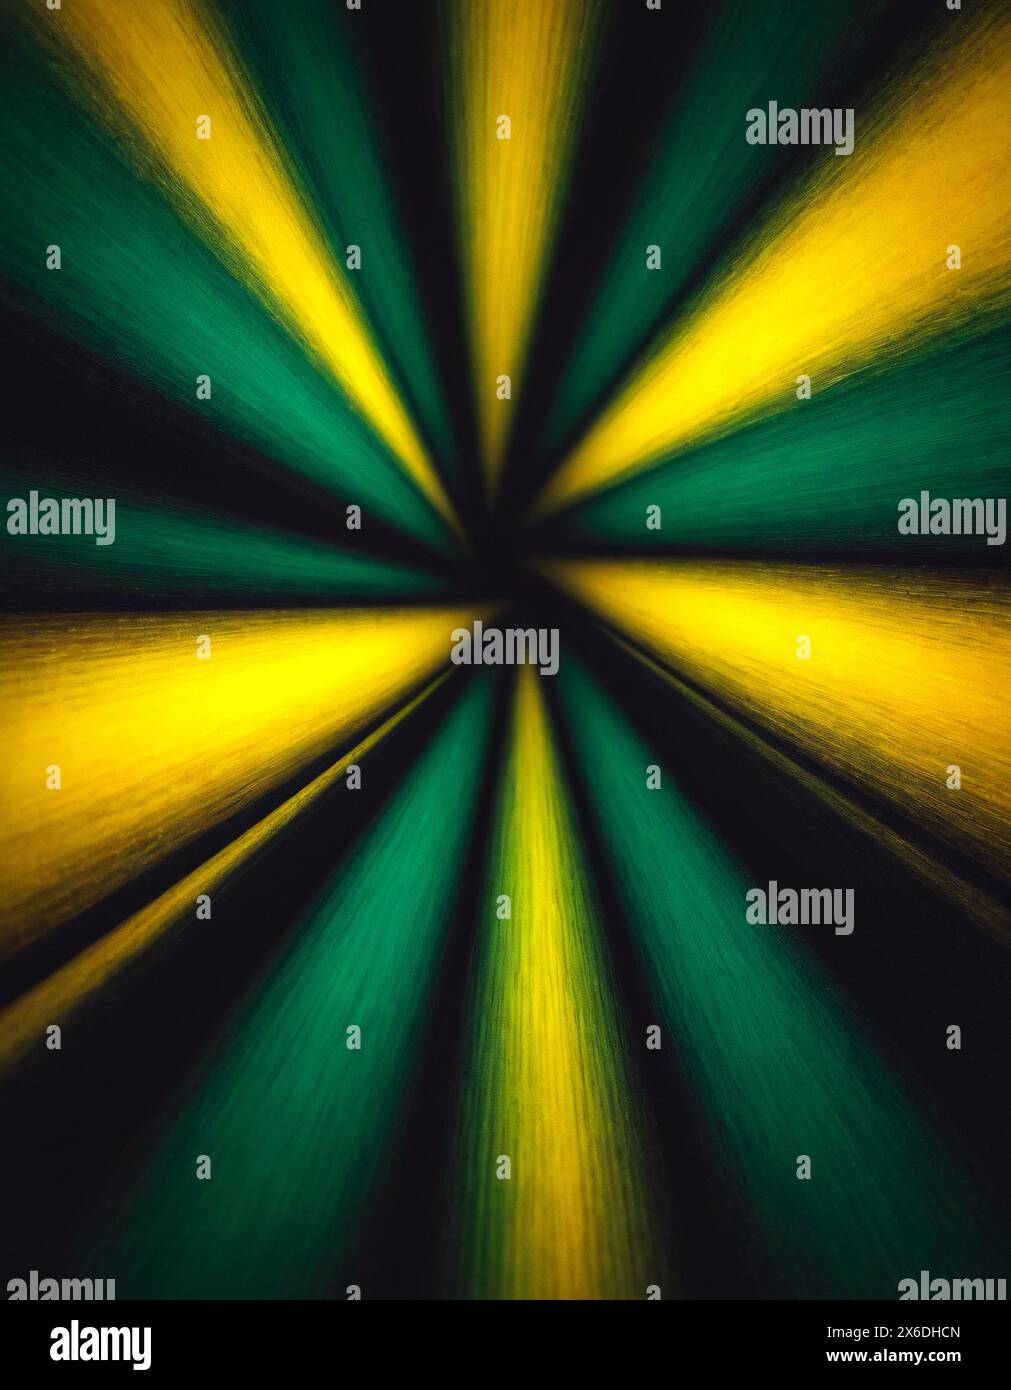 Organischer Tunnel in gebürsteter Textur mit Fluchtpunkt und Unschärfe in deckendem Grün und dunkelgoldenem Gelb und schwarzem Banner im Kopierraum Stockfoto